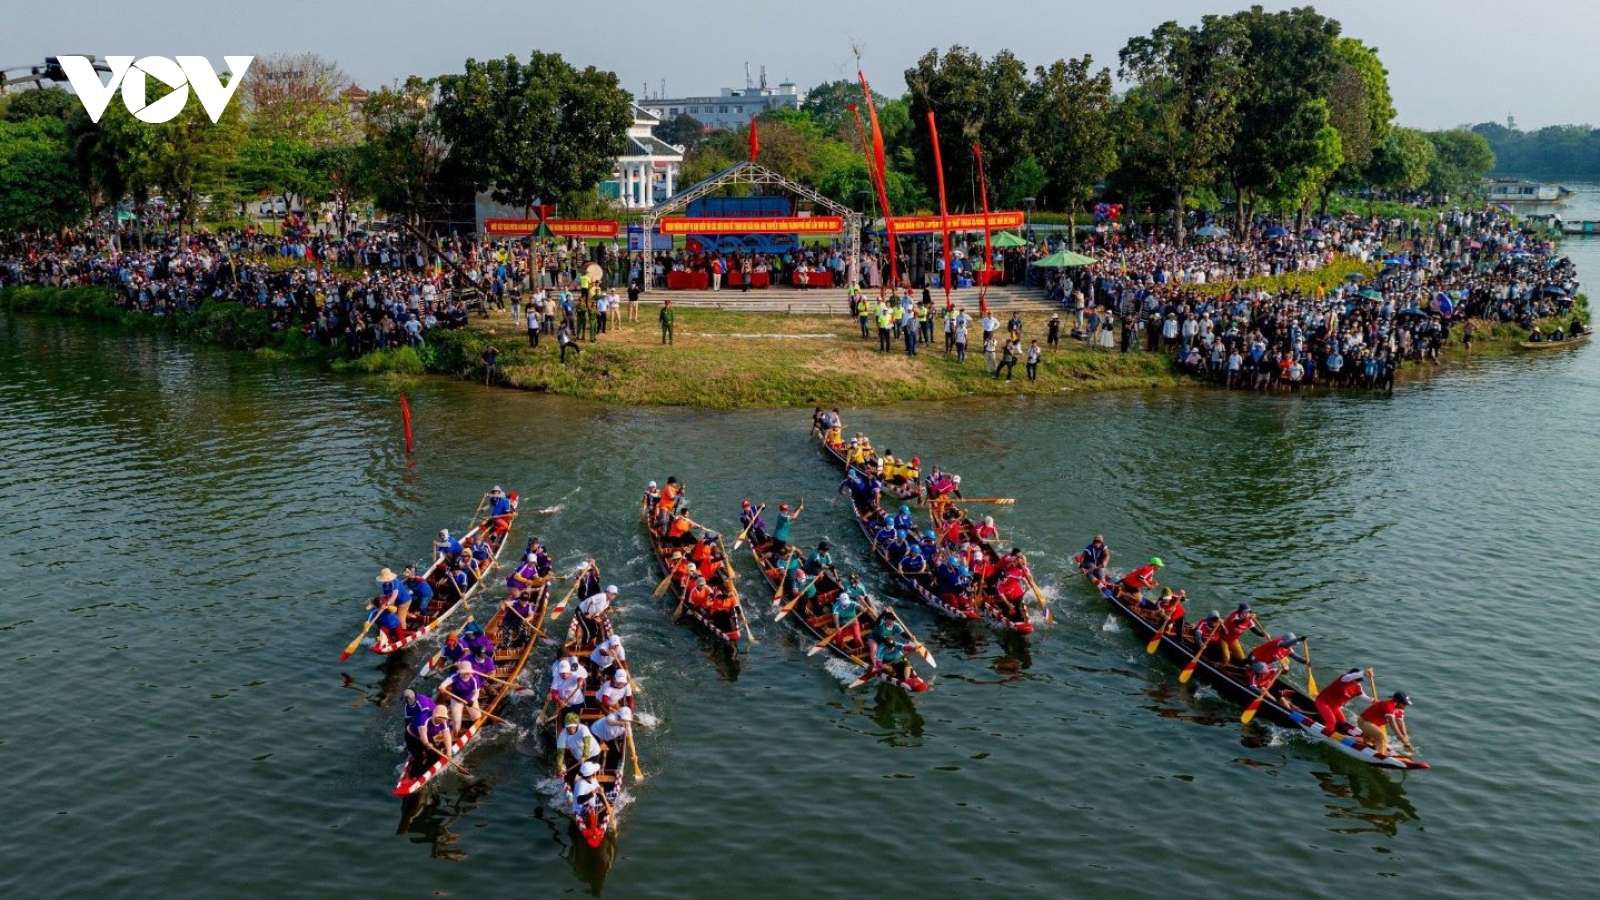 Du khách đổ về Huế xem đua ghe truyền thống trên sông Hương